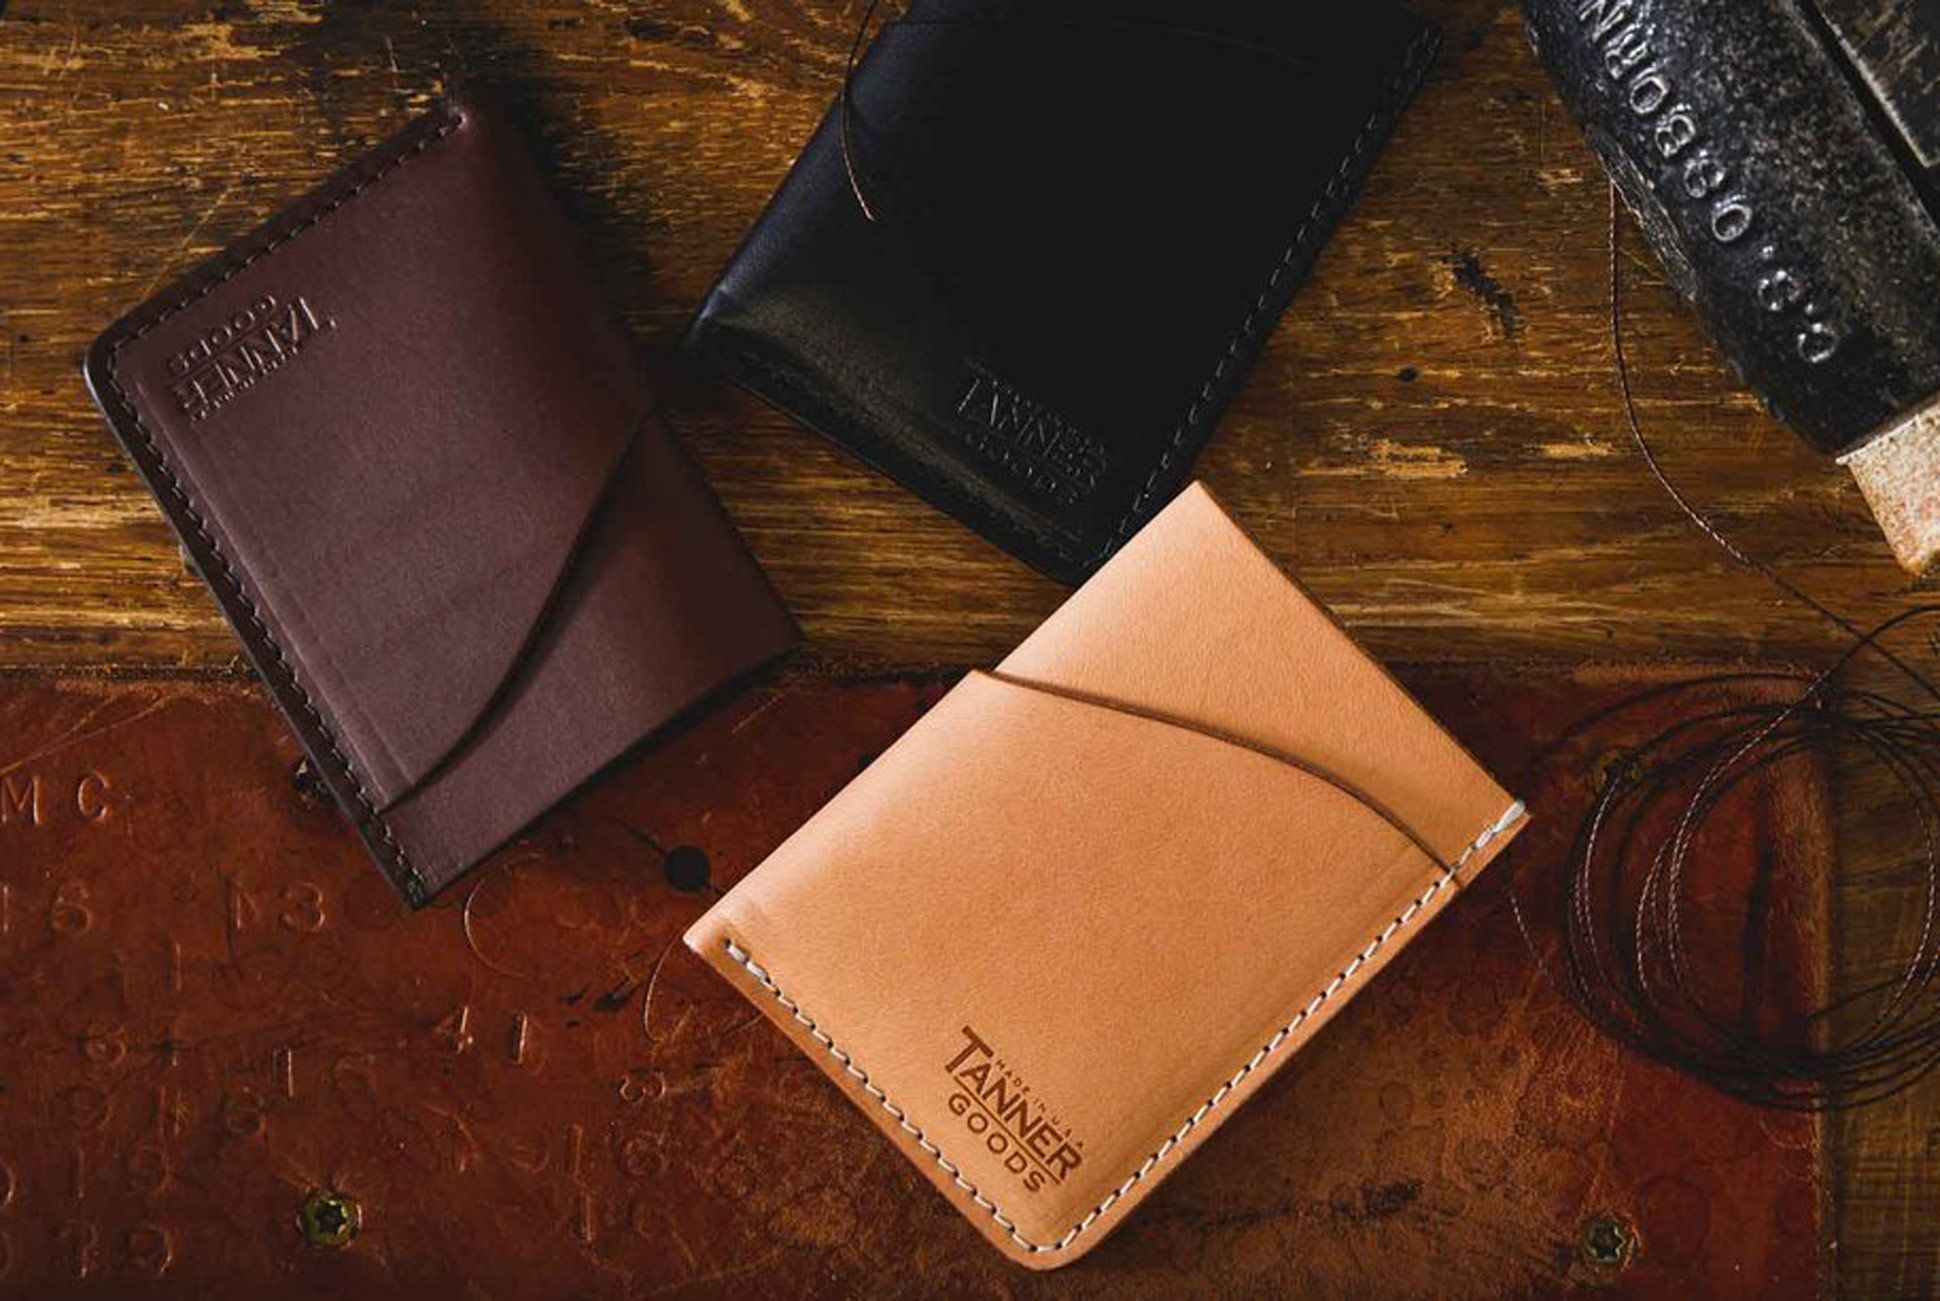 TANNER GOODS Mens Wallet. Mens Leather Wallets. Utility Bifold 4 Card  Pocket Wallet, Billfold Slot Cardholder. Made in USA, Natural